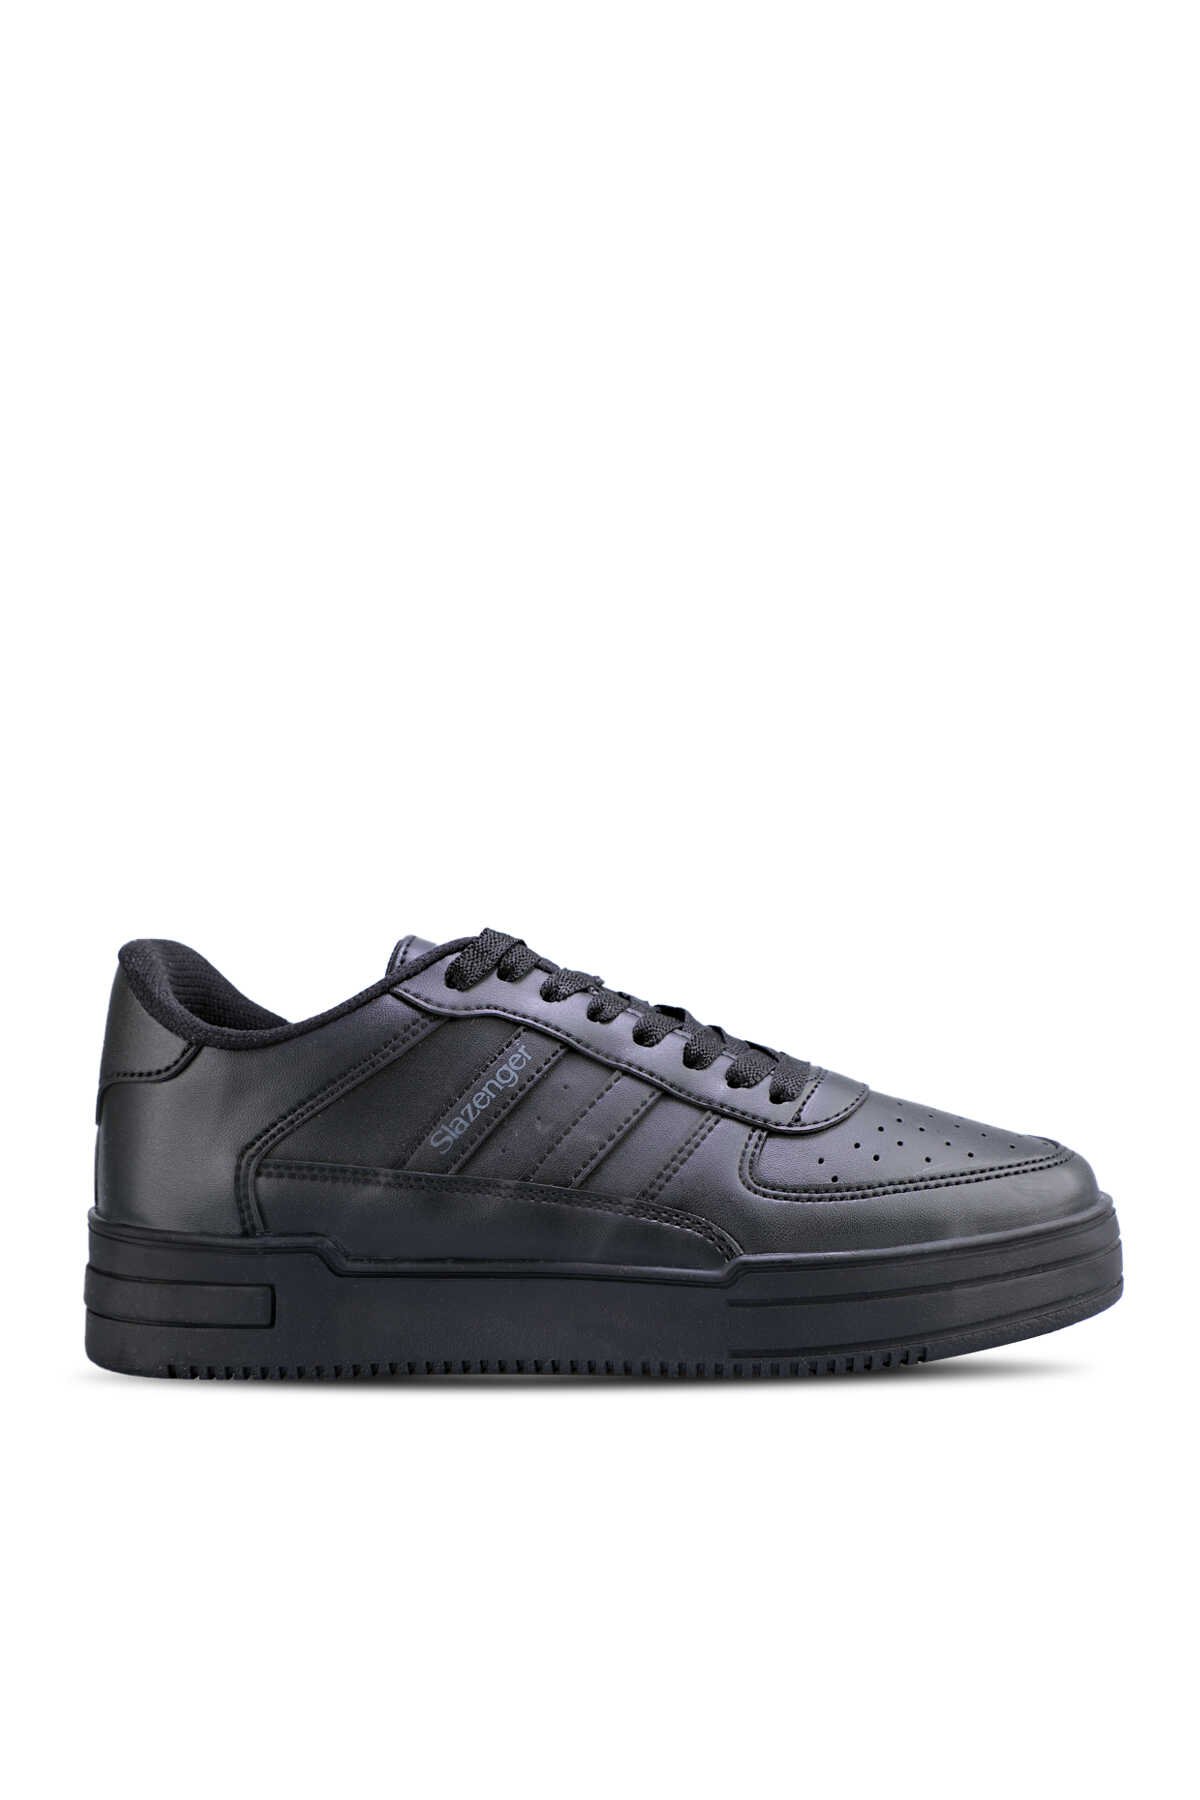 Slazenger - CAMP IN Sneaker Kadın Ayakkabı Siyah / Siyah